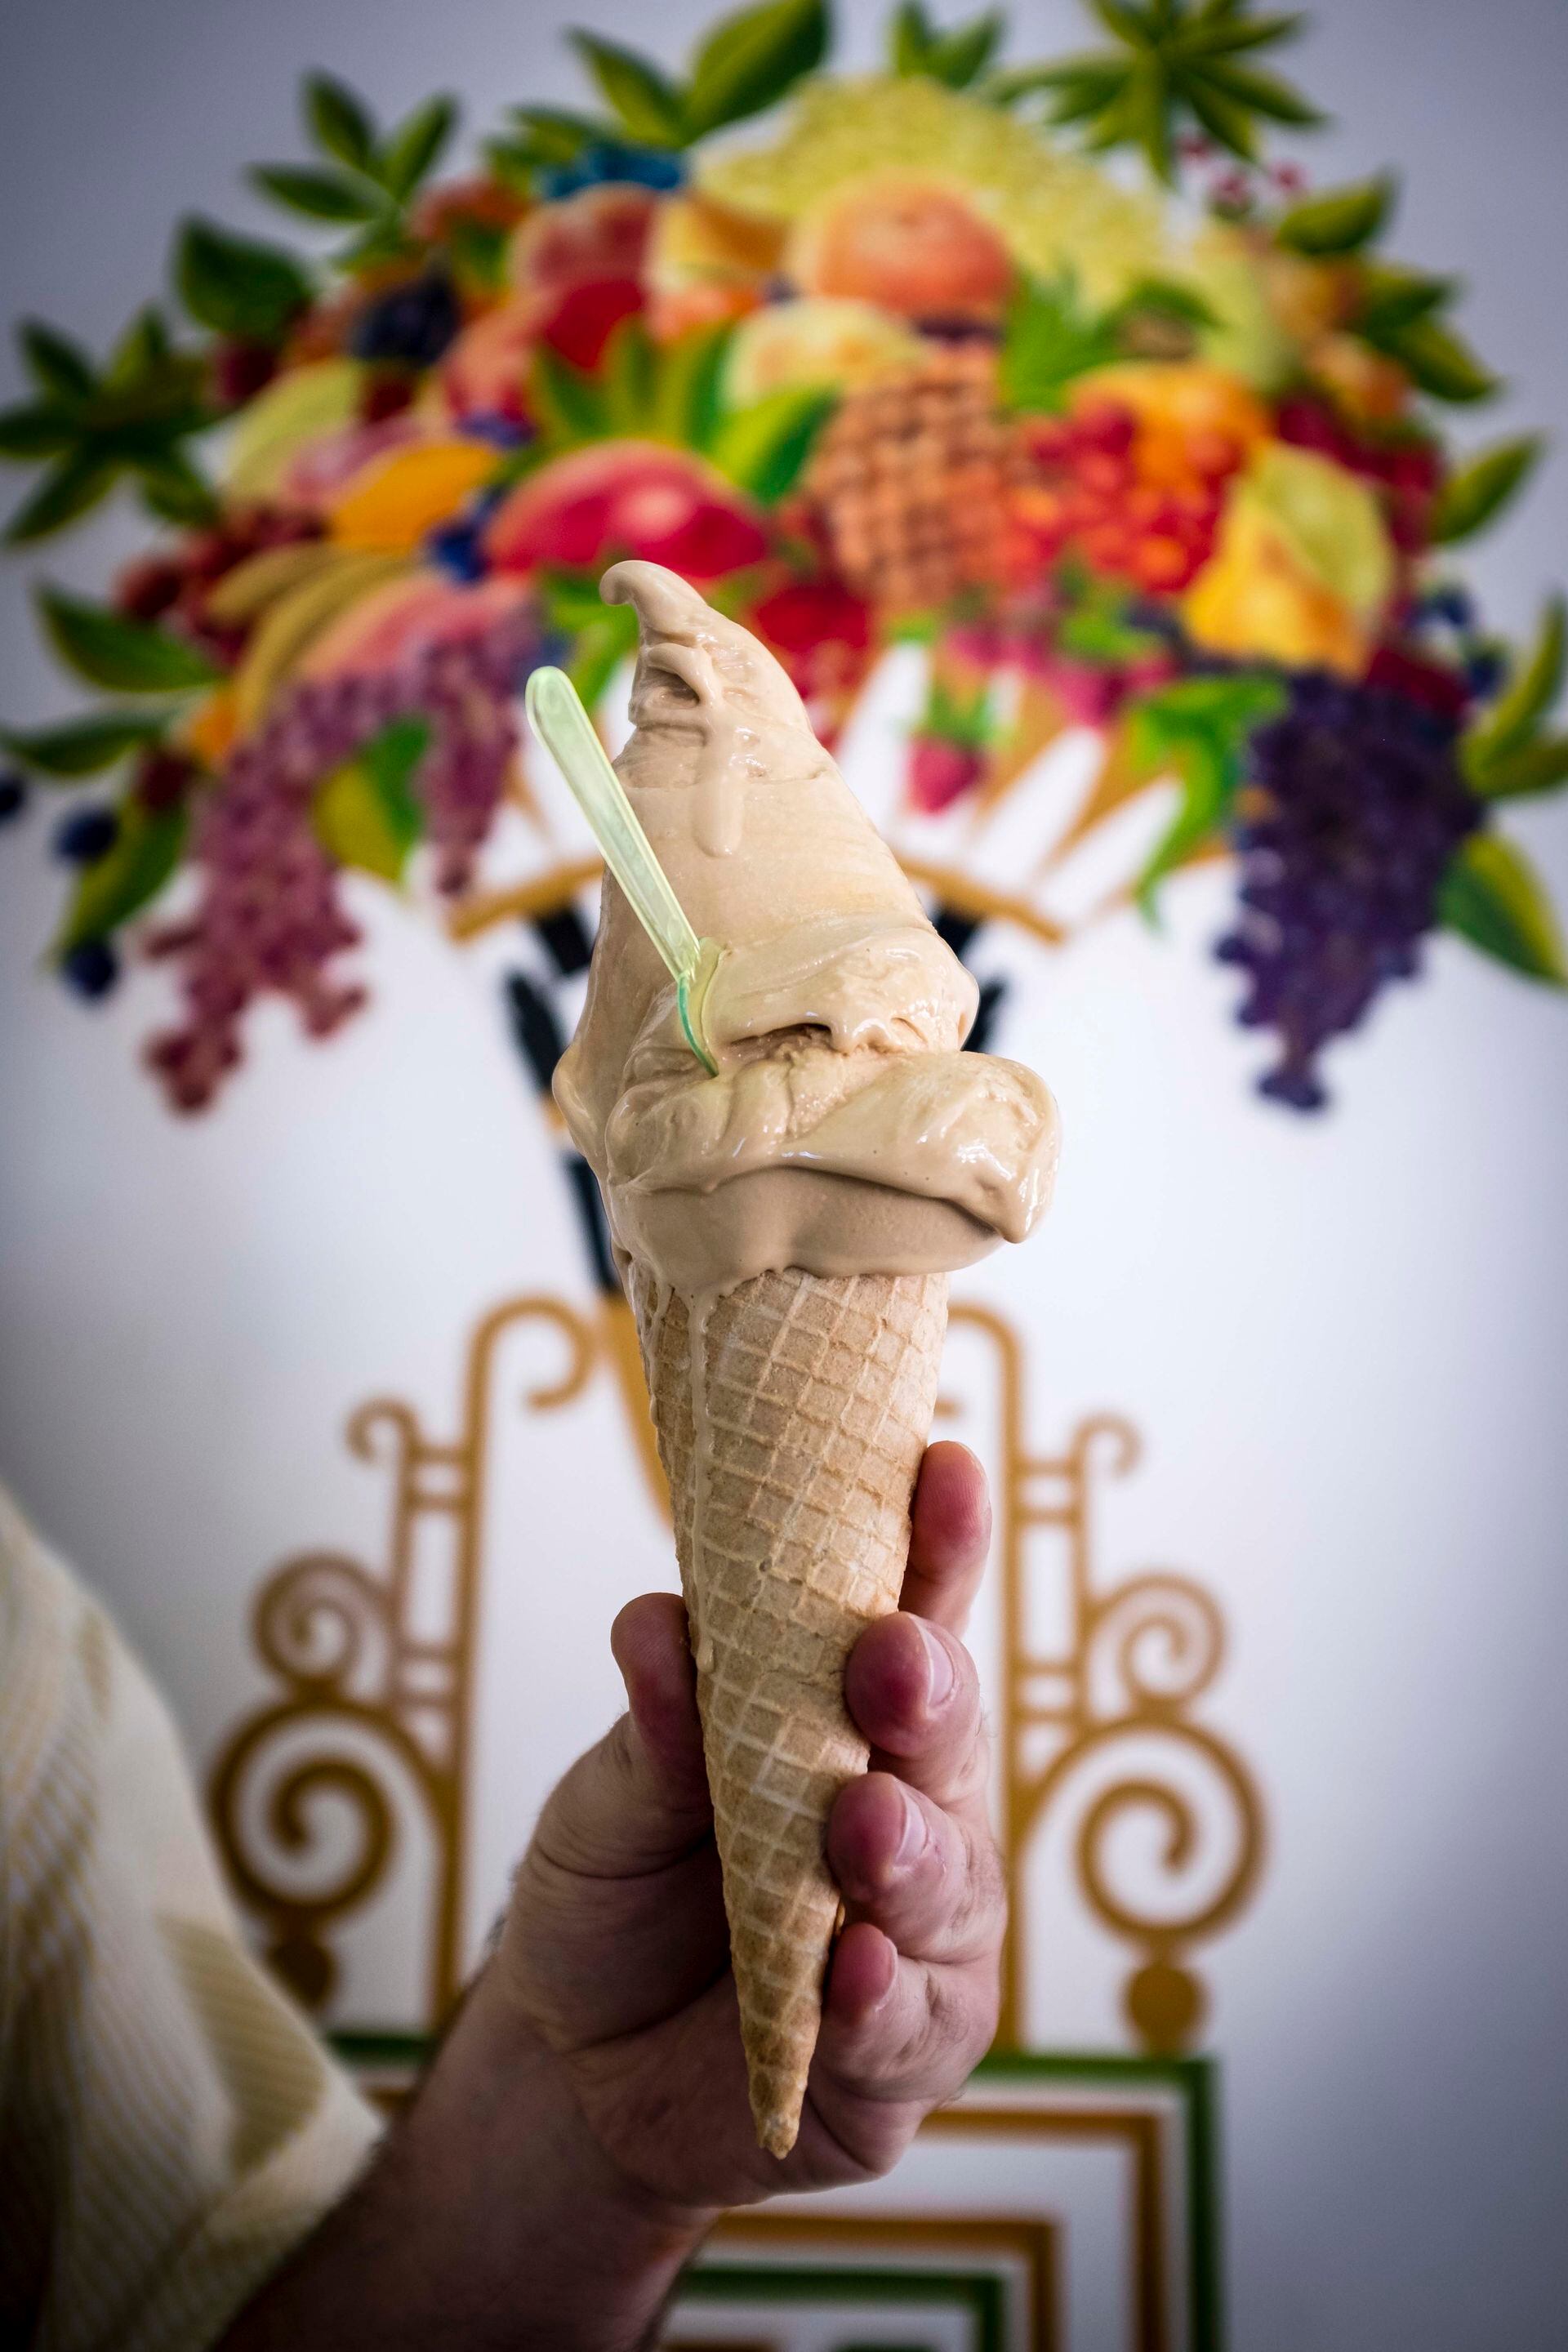 El helado de dulce de leche salteño más famoso, con la misma receta de siempre.